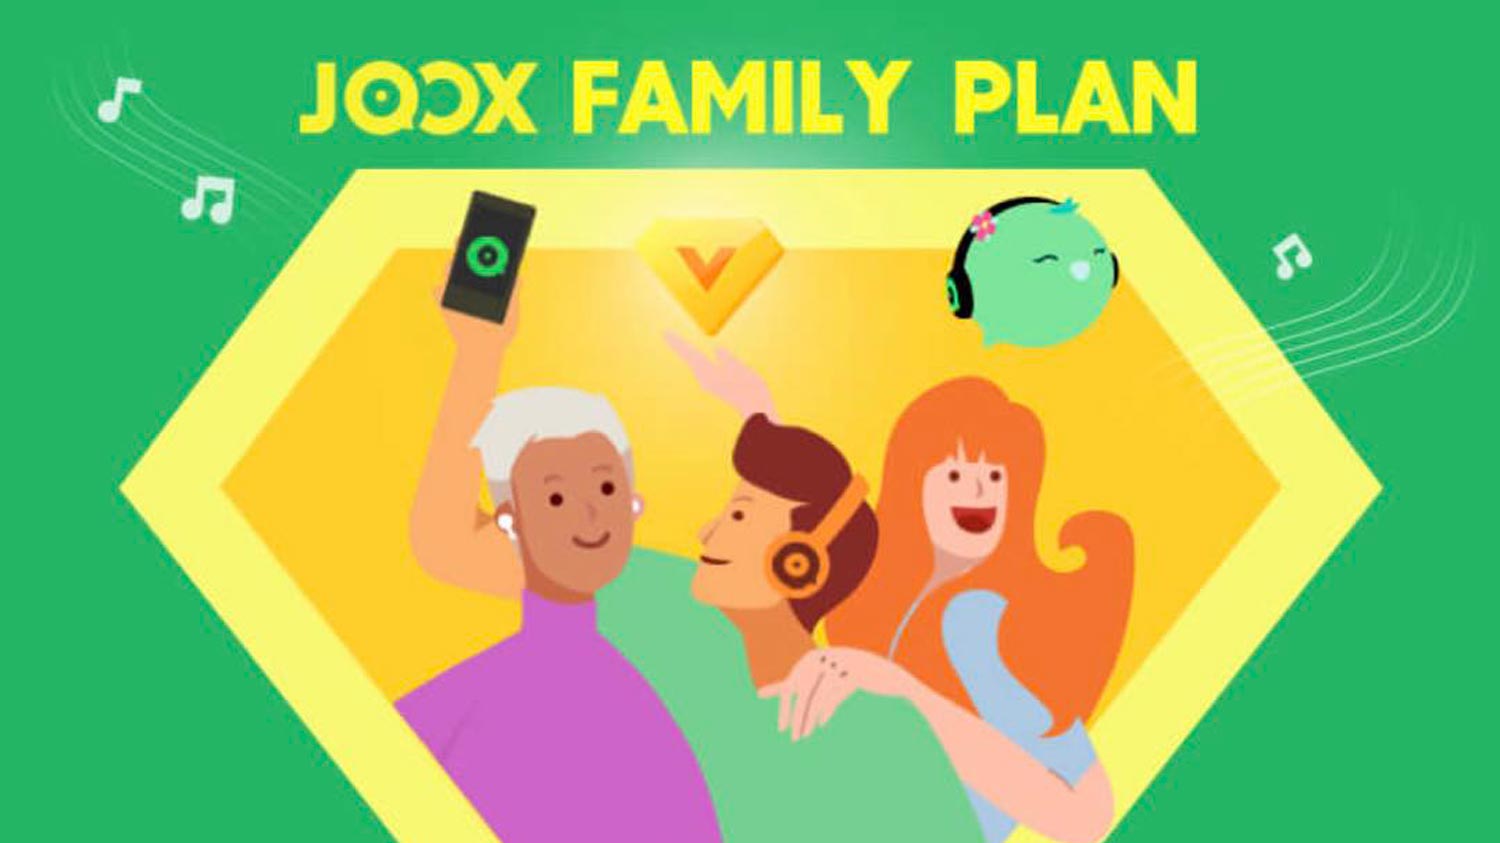 Joox Memperkenalkan Pelan Keluarga Pada Harga RM18.90 Sebulan